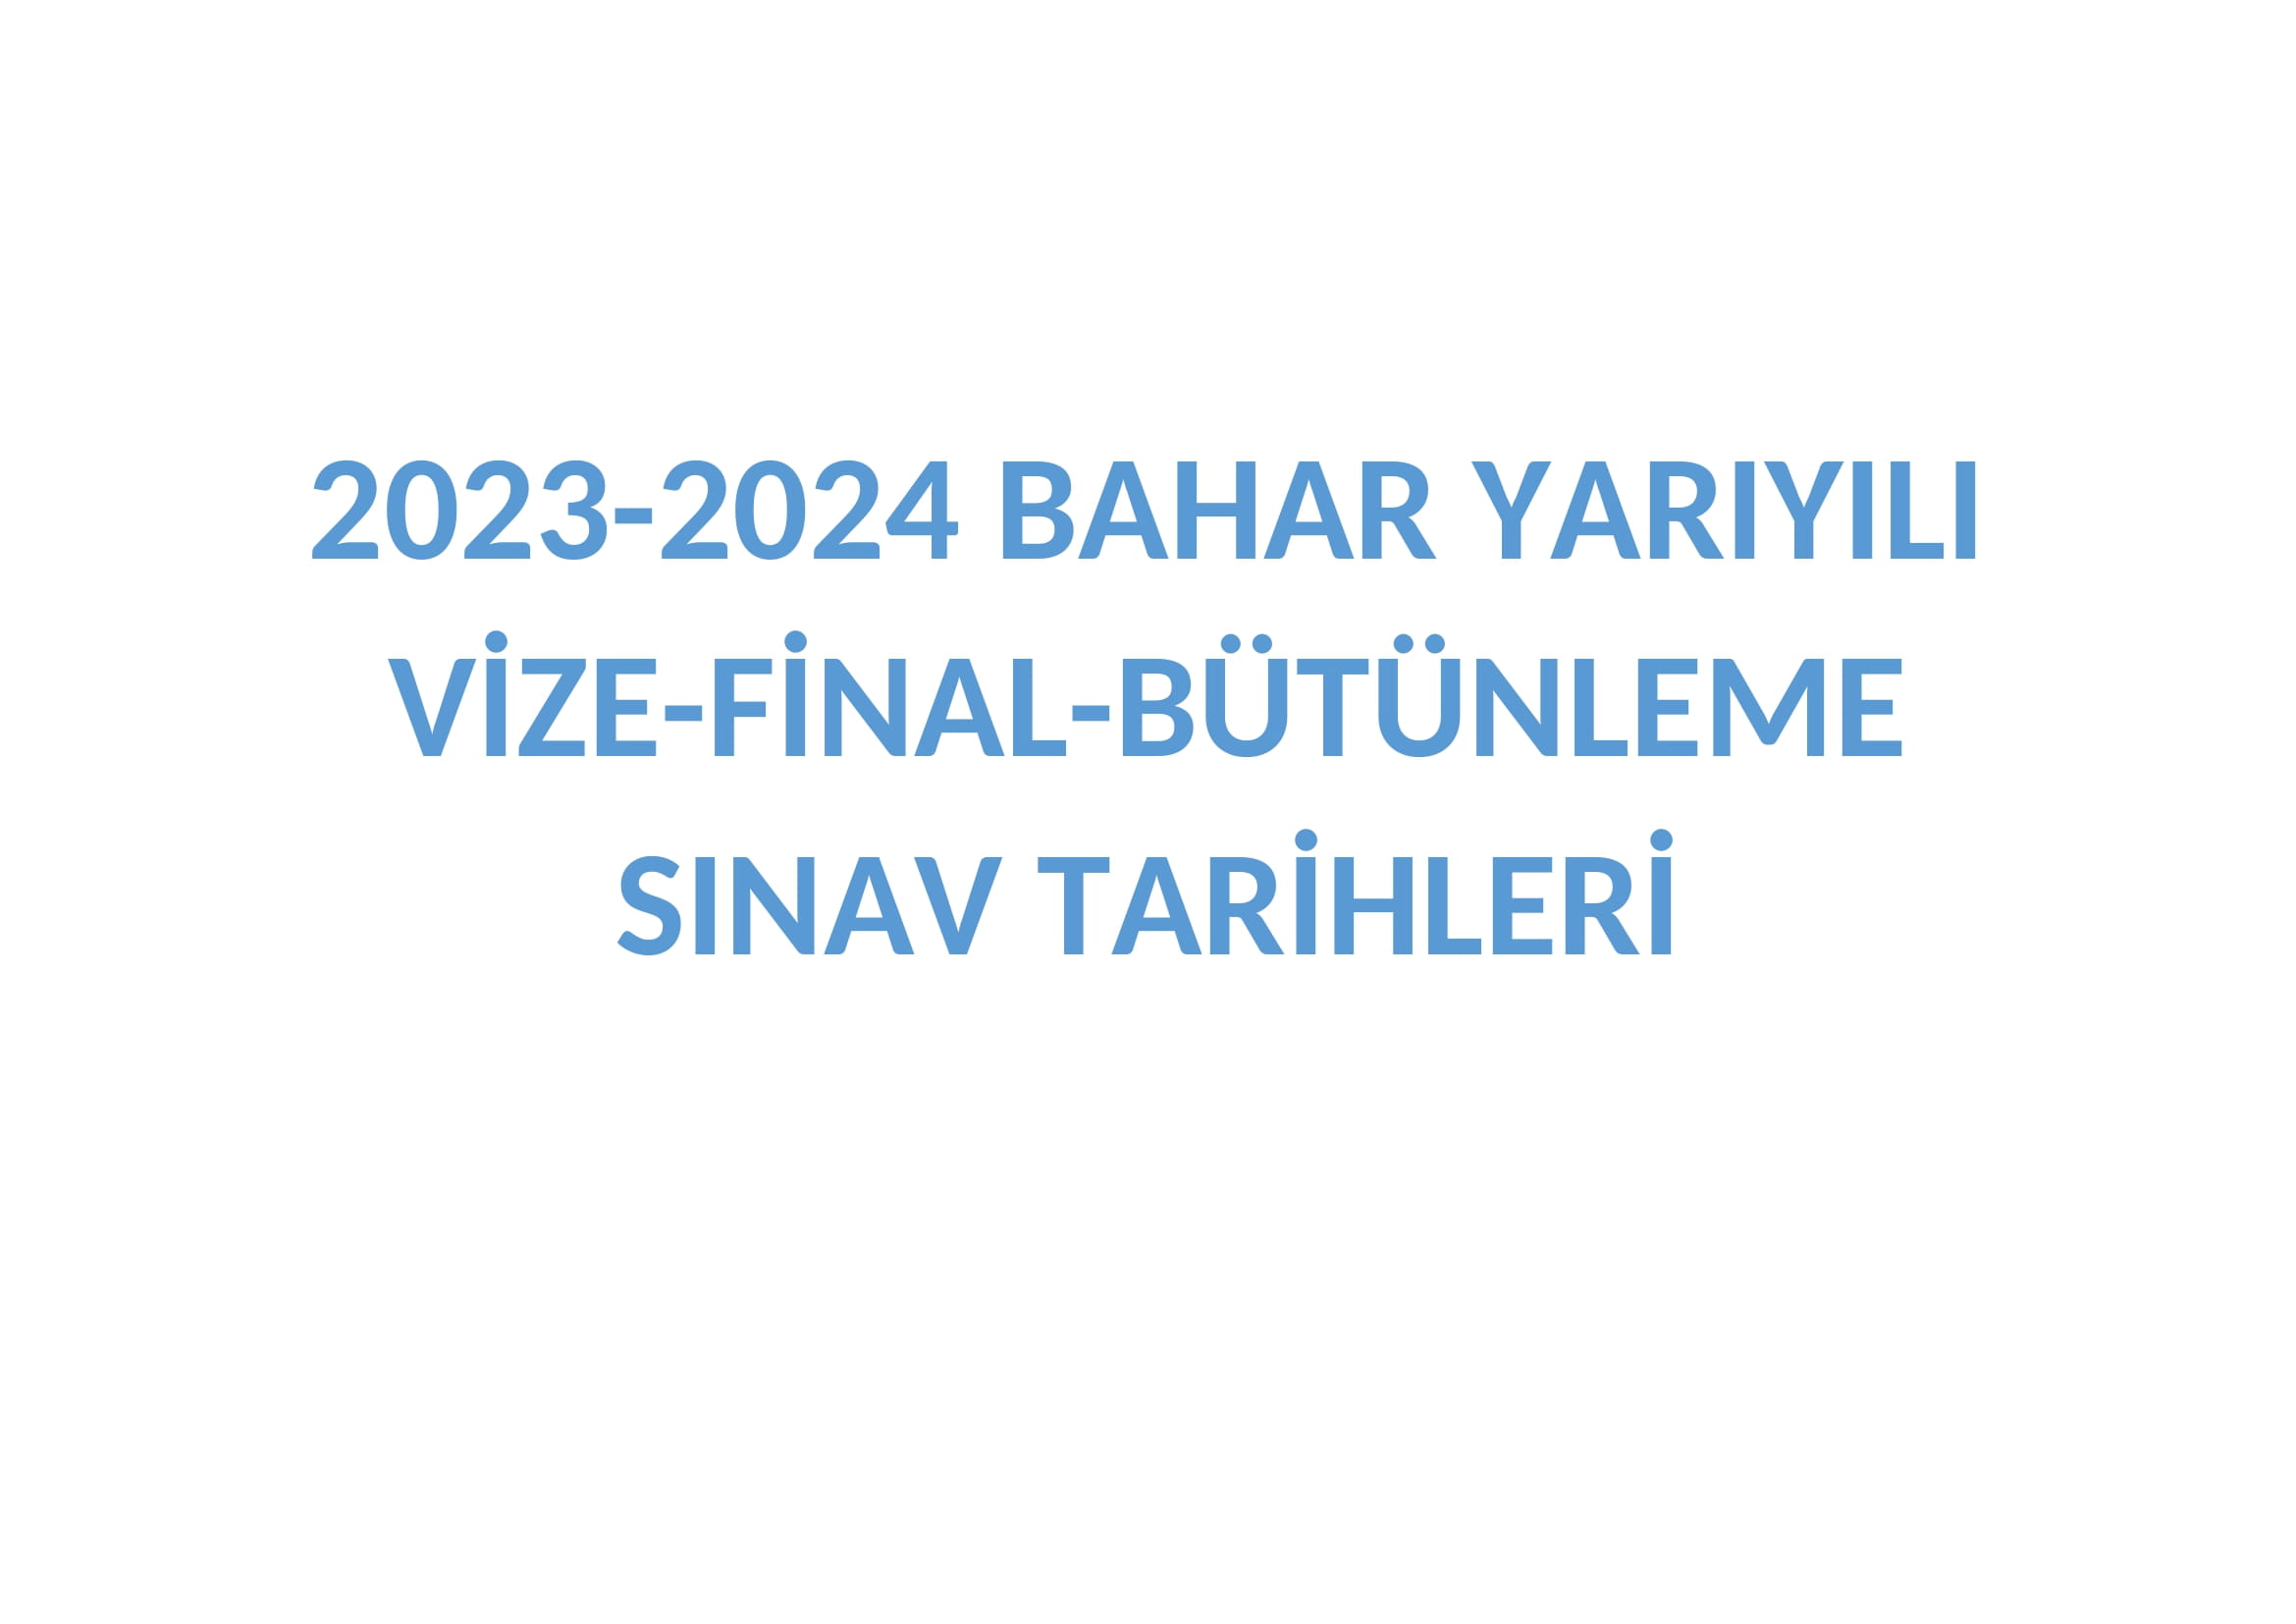 2023-2024 BAHAR YARIYILI VİZE-FİNAL-BÜTÜNLEME SINAV TARİHLERİ